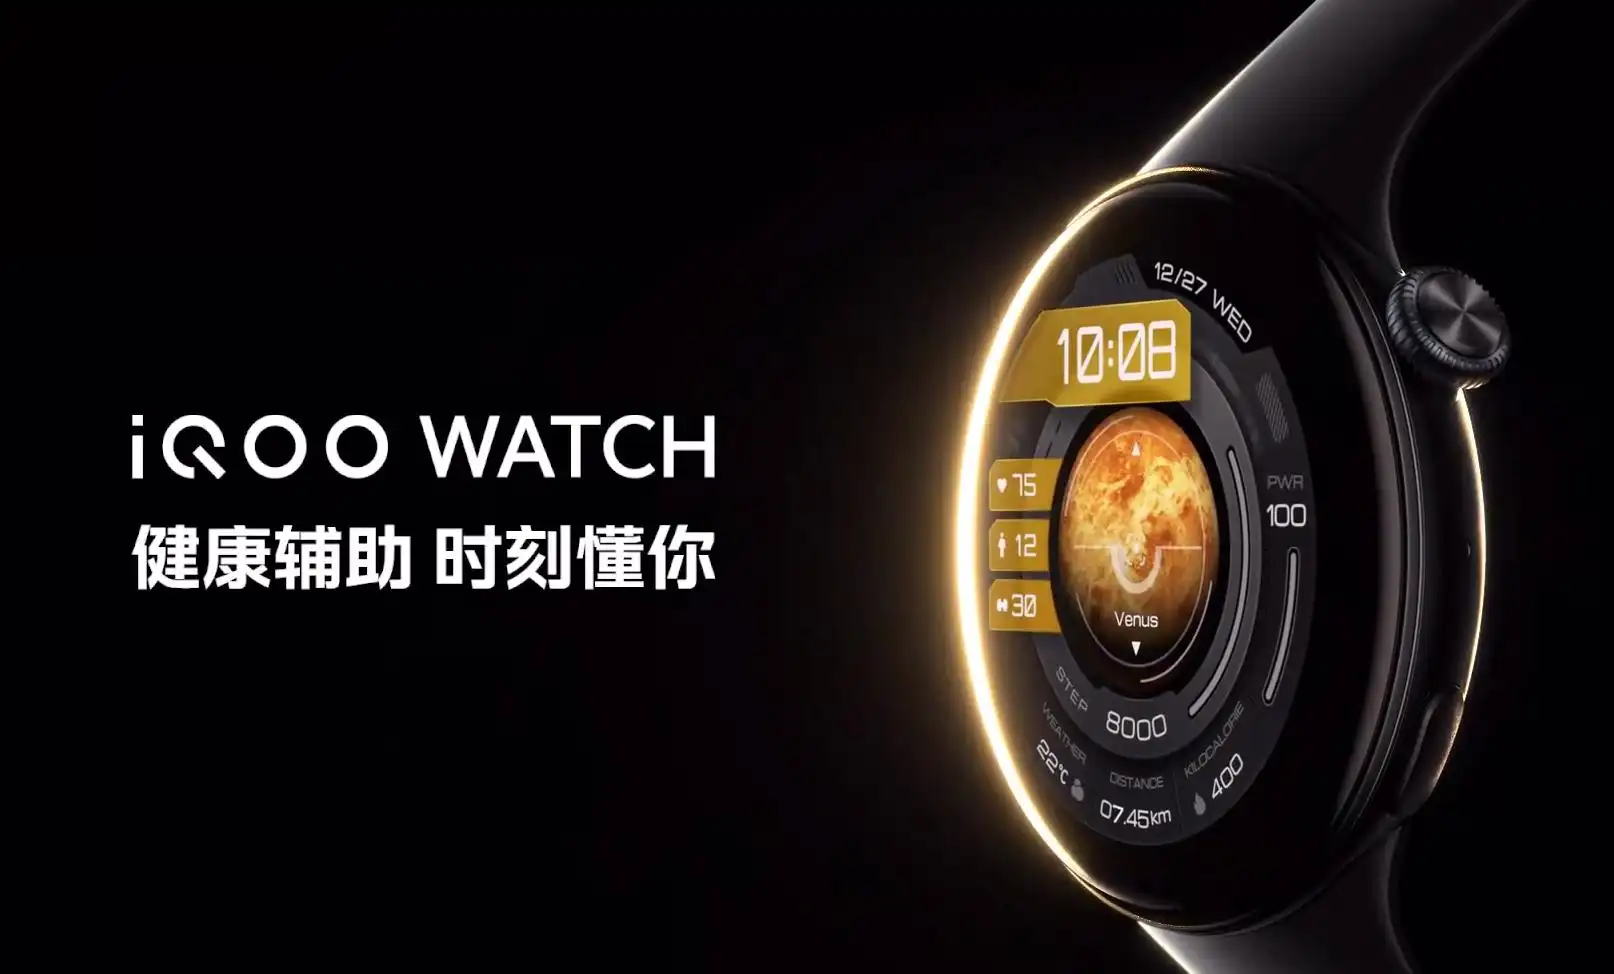 iQOO旗下首款智能手表iQOO WATCH发布 支持eSIM